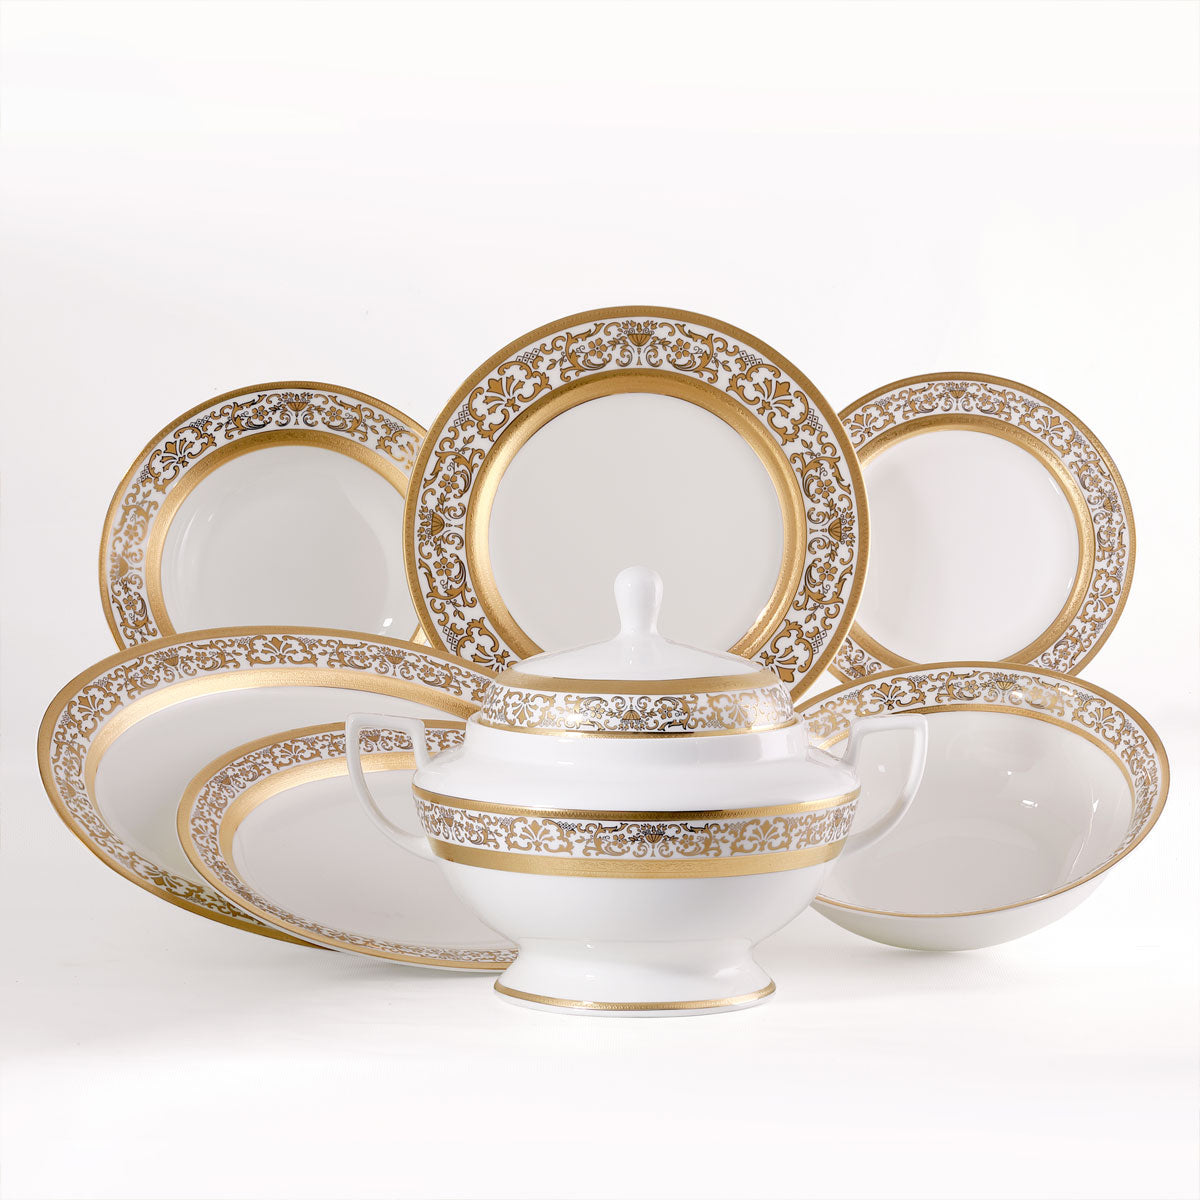 Servizio piatti te e caffè classico in oro in fine porcellana - Prestige